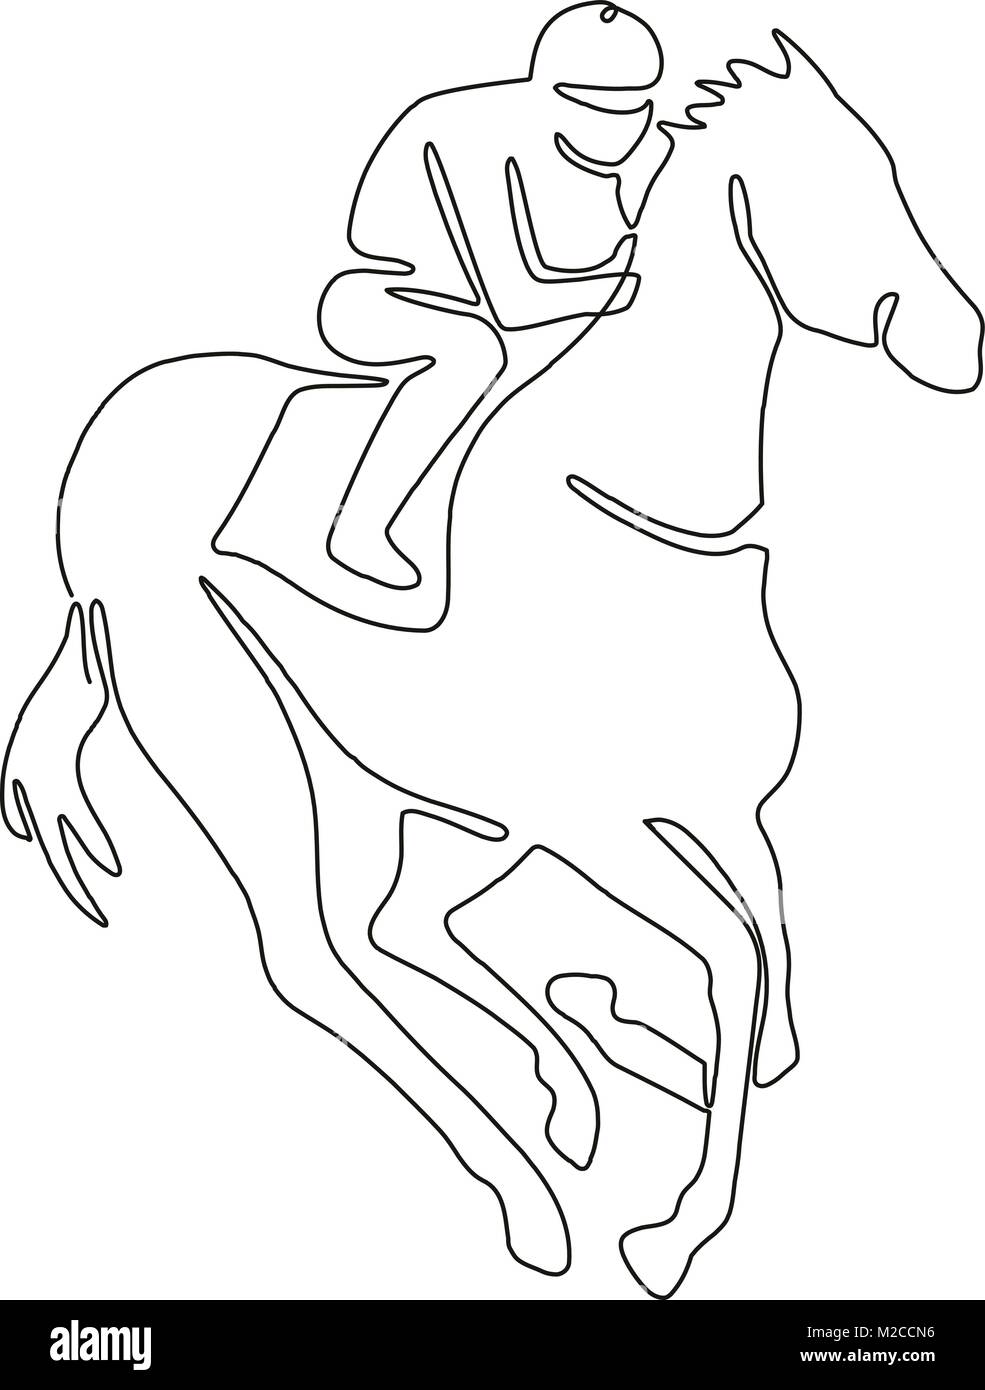 Ligne continue dimensions illustration d'un jockey à cheval sur les courses de chevaux fait en croquis ou doodle style. Illustration de Vecteur